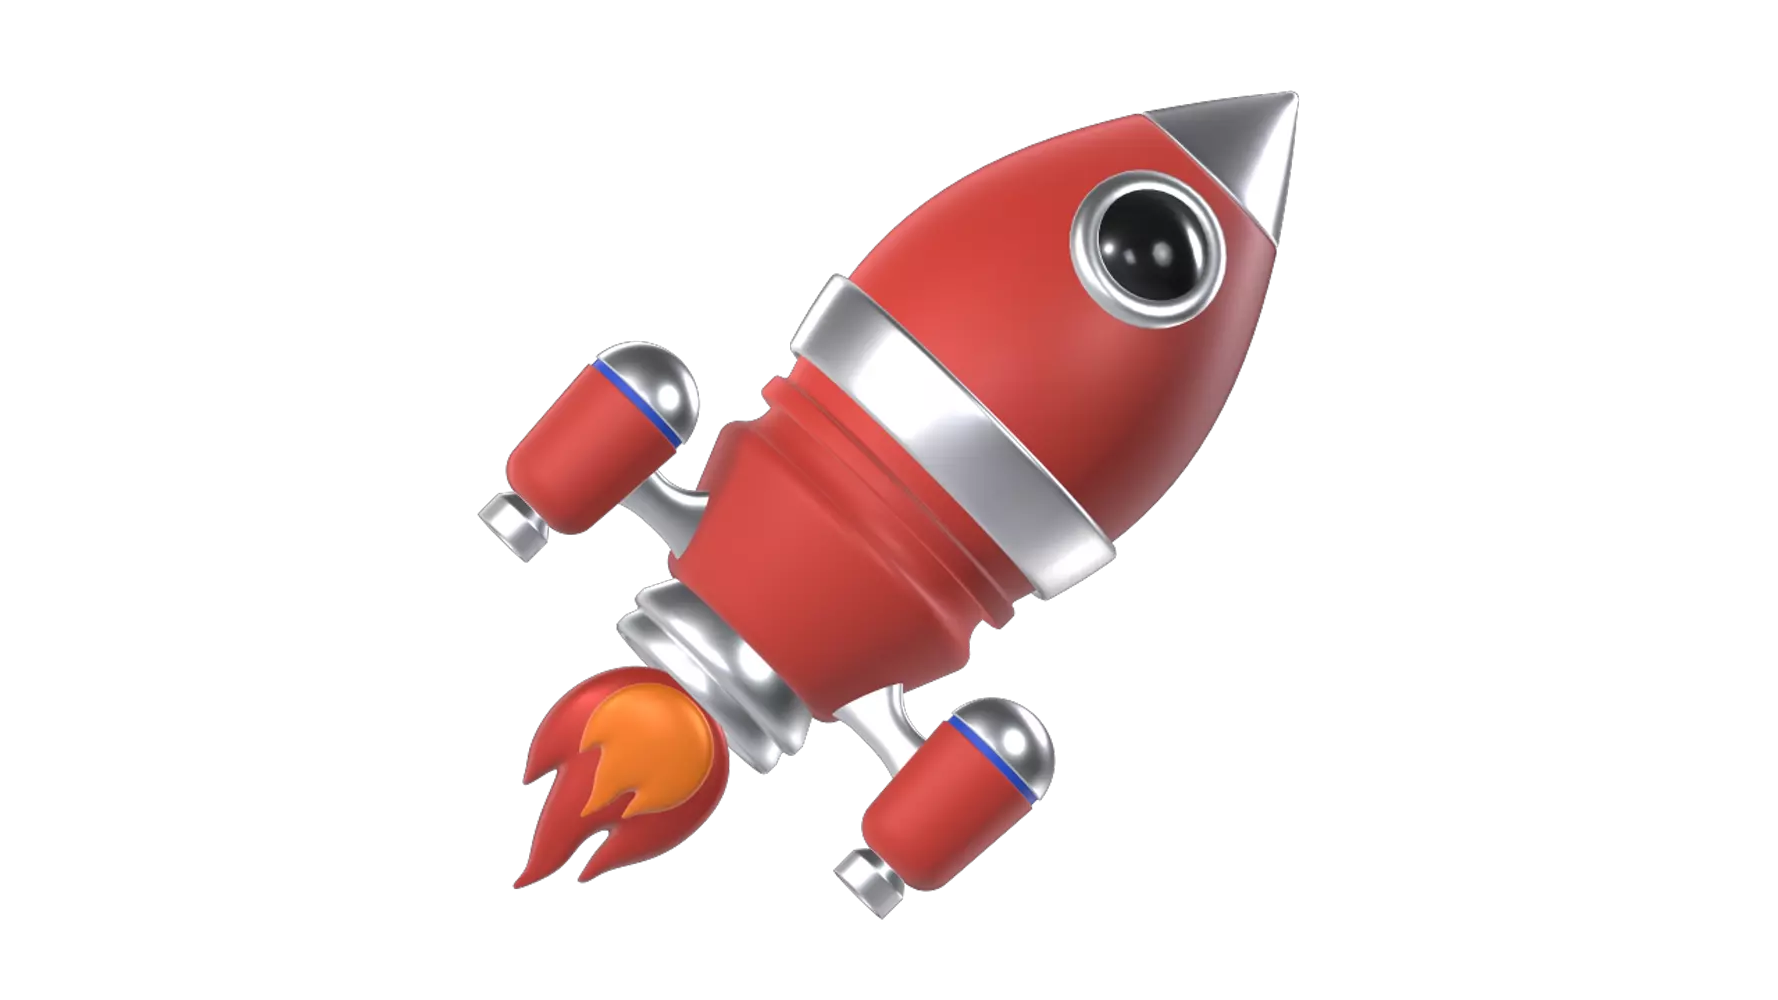 Rocket 3d model--6e91c25e-1207-4a28-a90f-2e65b7a87ecf